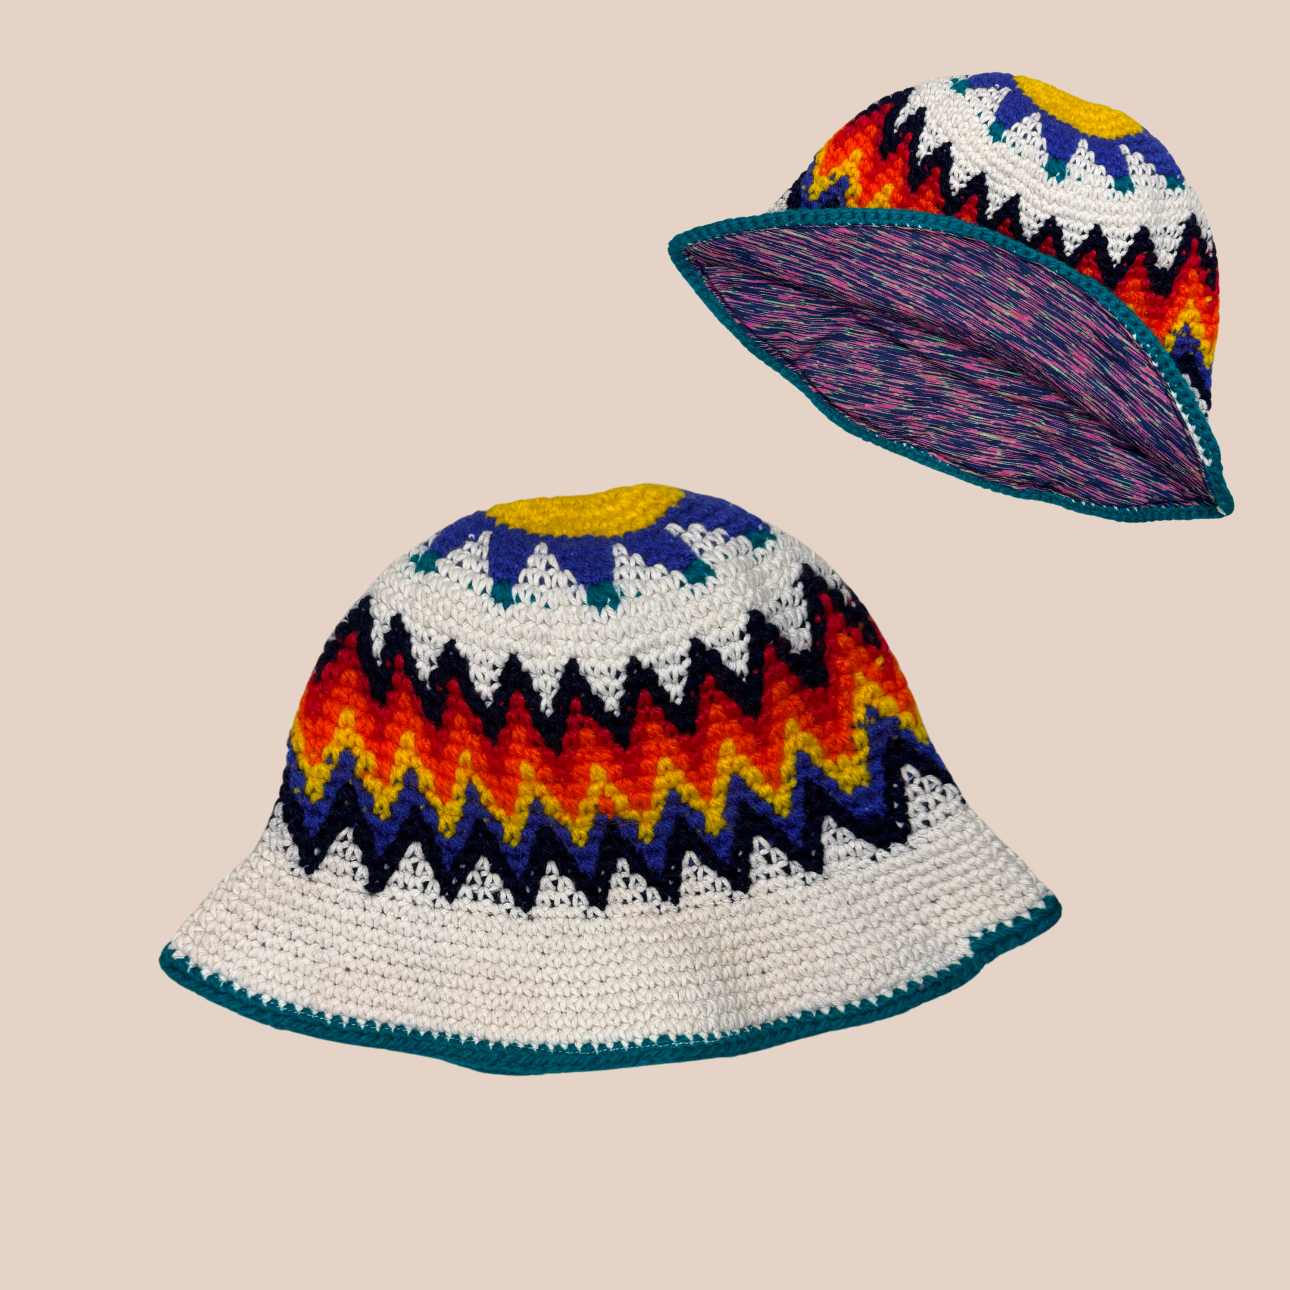 Un bucket hat crocheté en laine et acrylique, arborant des couleurs vives et audacieuses, doublure colorée